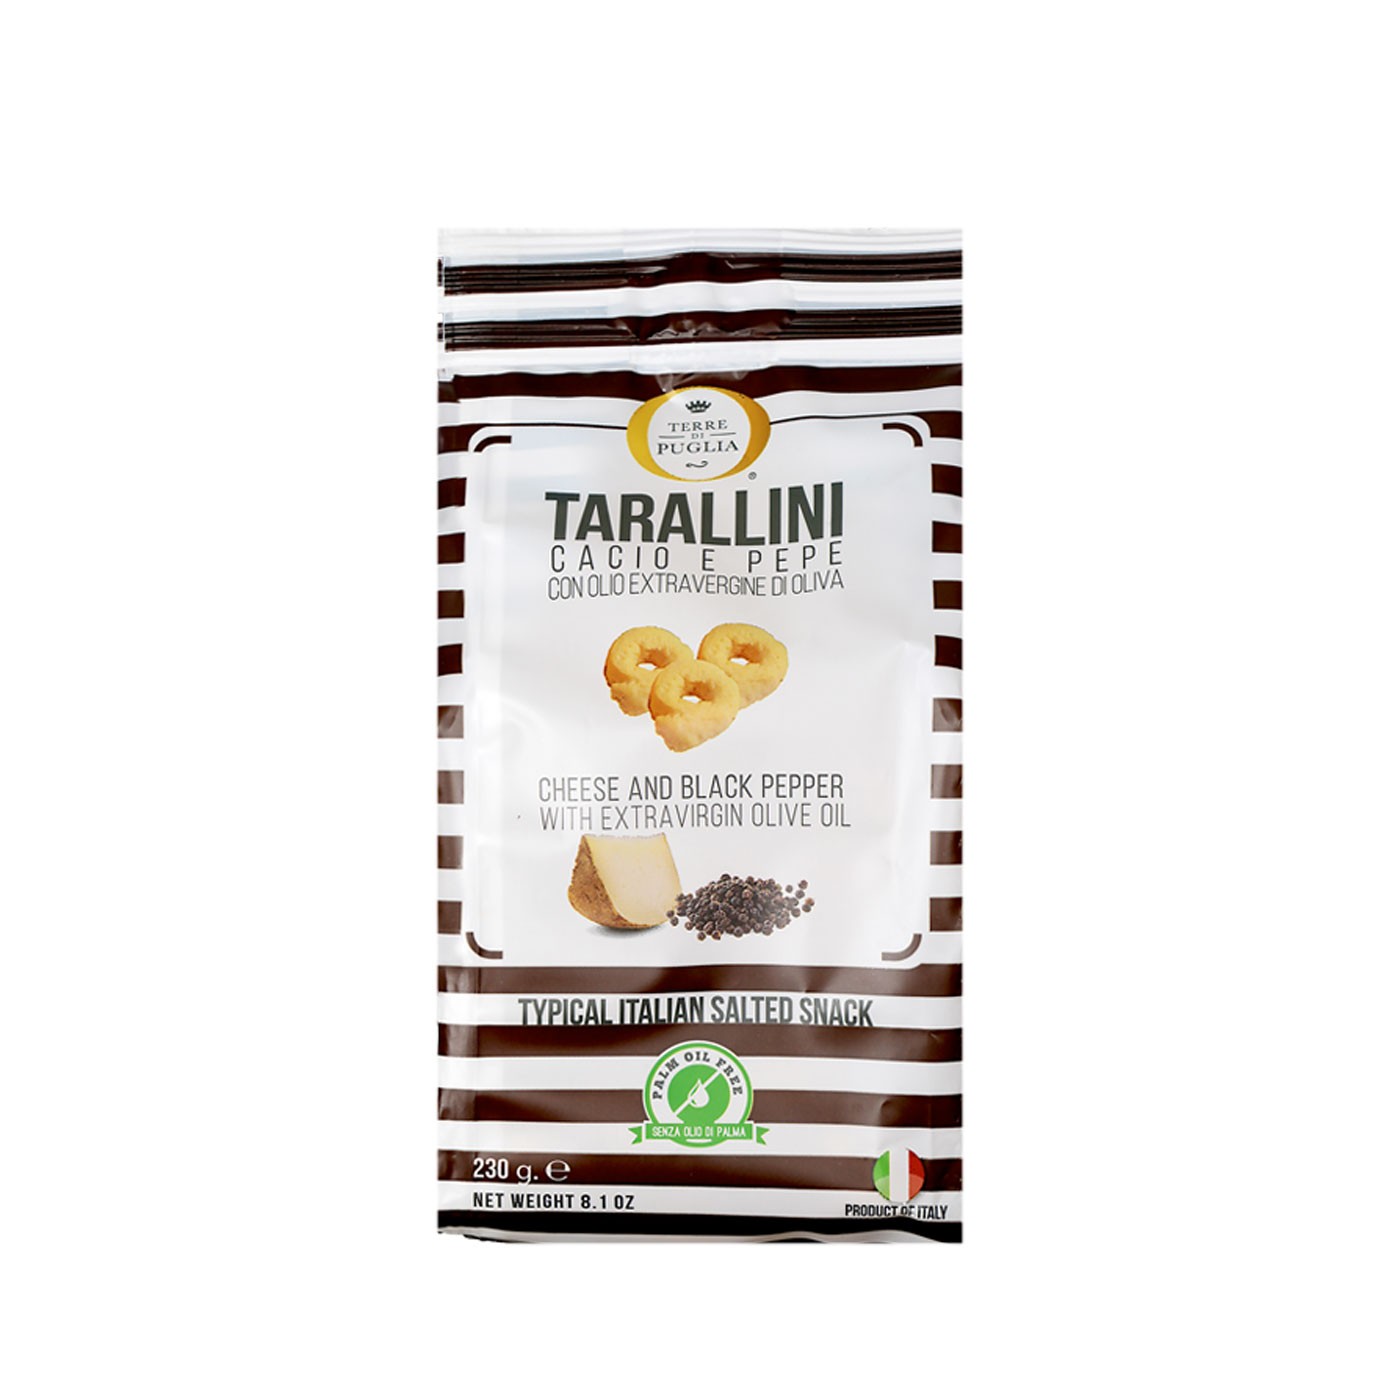 Cacio e Pepe Tarallini Crackers 8.1 oz - Puglia Sapori | Eataly.com ...